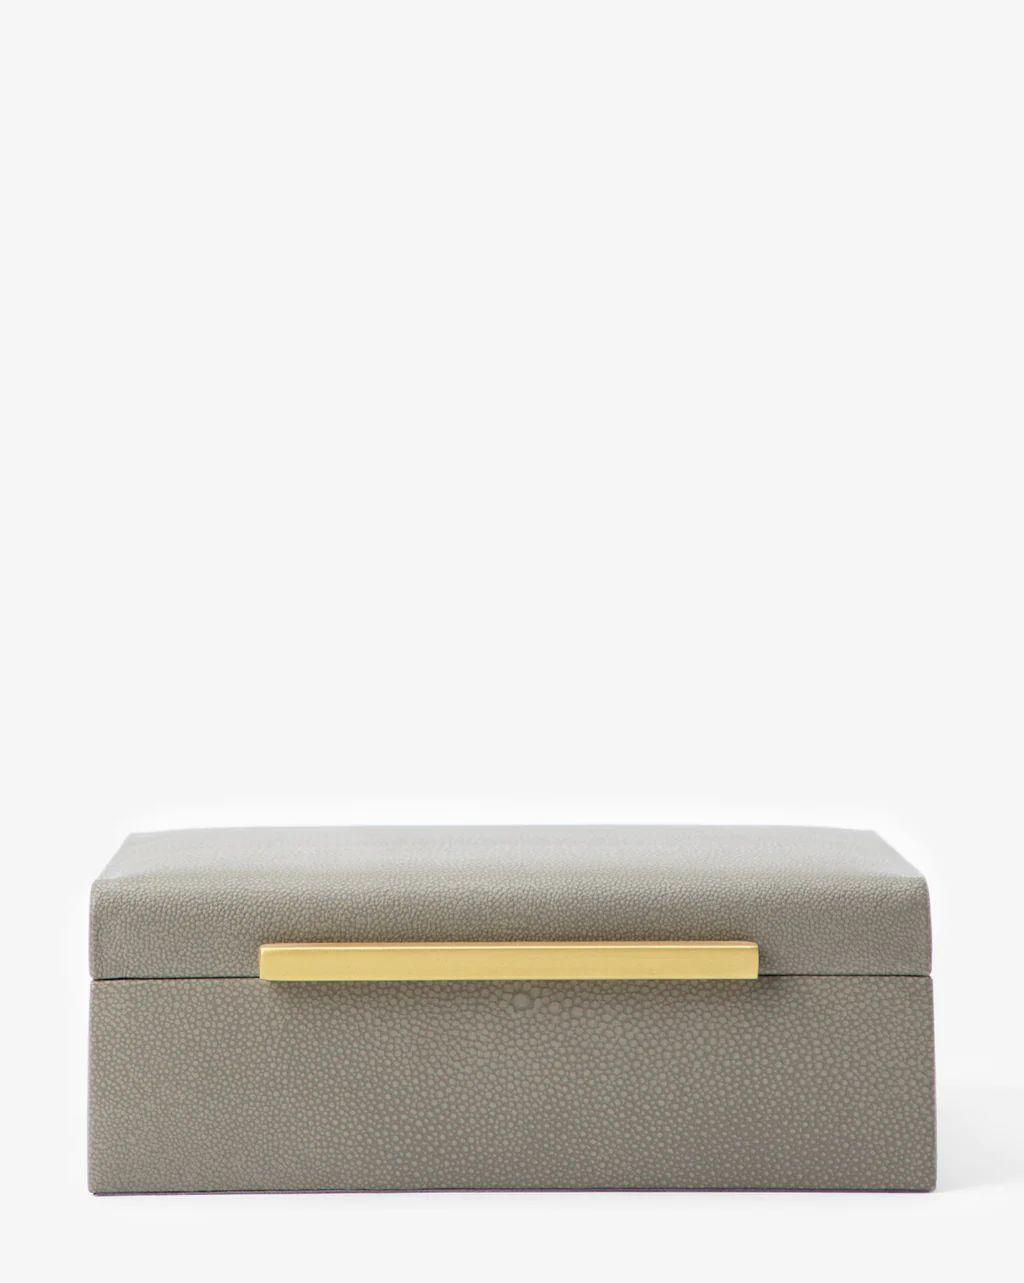 Gray Shagreen Box | McGee & Co.